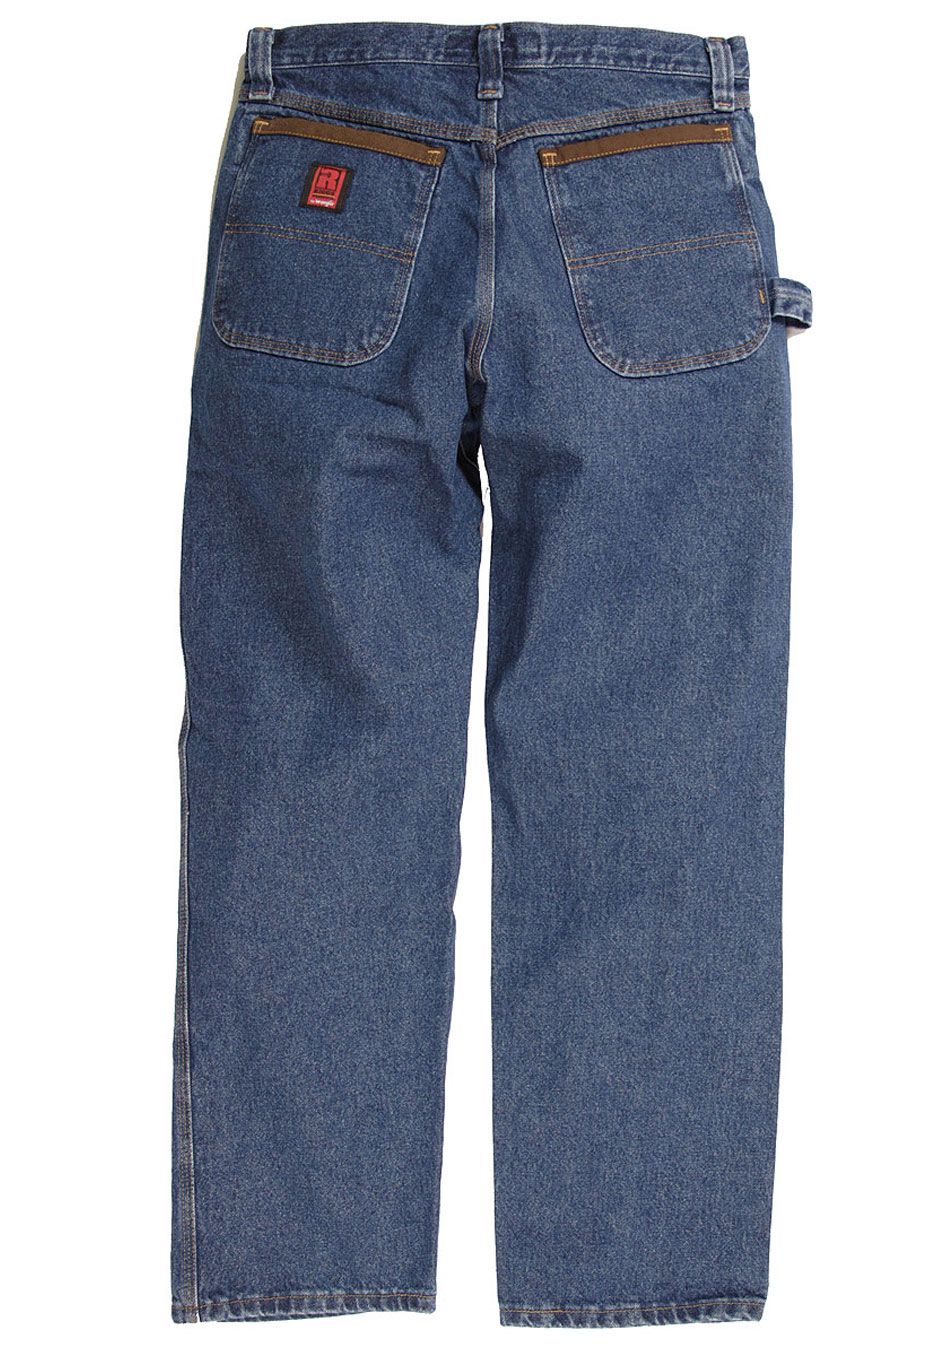 wrangler durable basic jeans